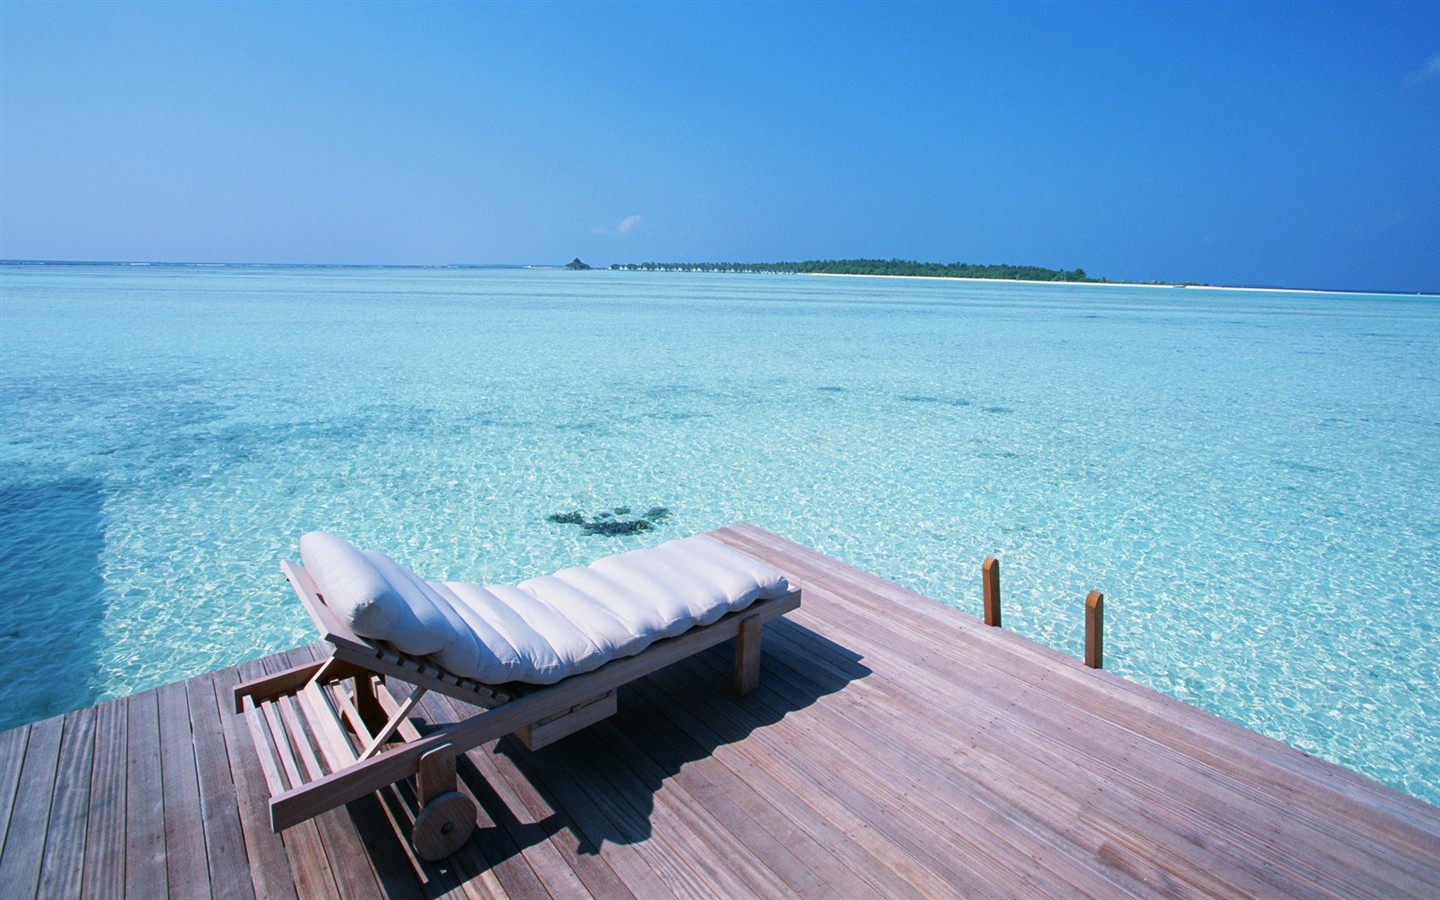 Maledivy vody a modrou oblohu #13 - 1440x900